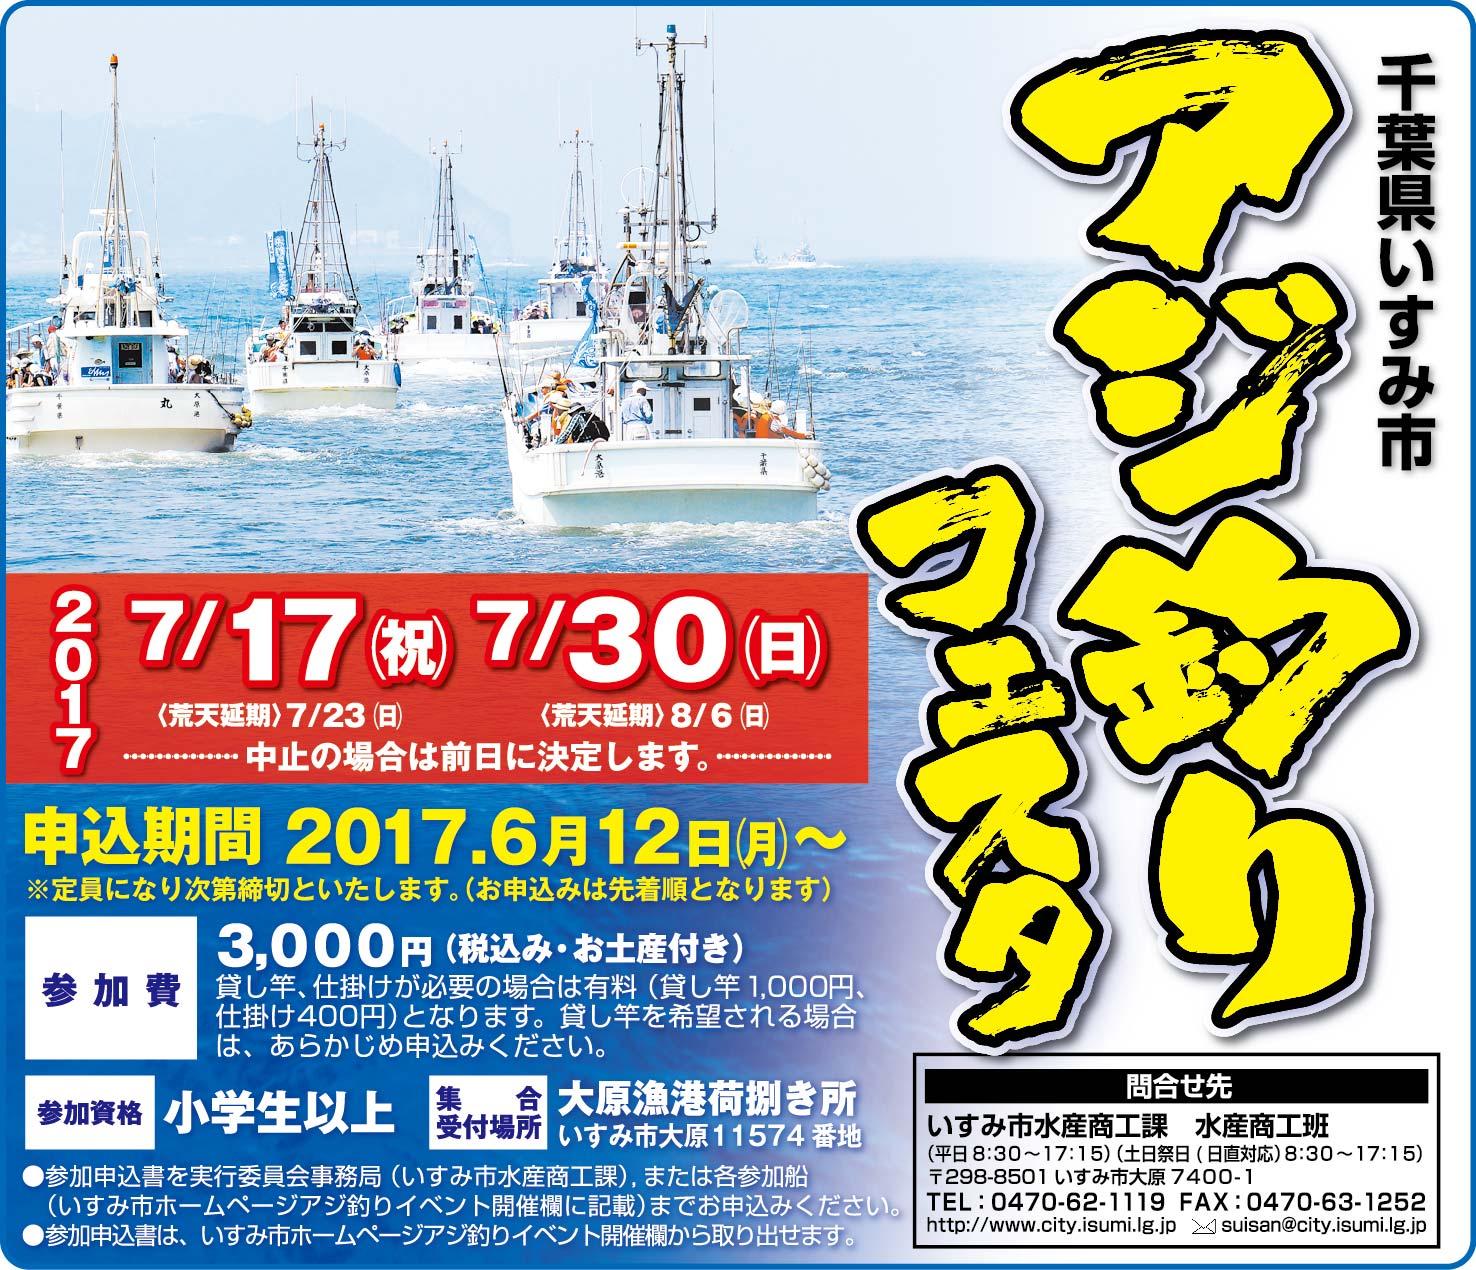 海快晴ニュース 千葉県いすみ市アジ釣りフェスタ開催 海快晴ブースも出店します